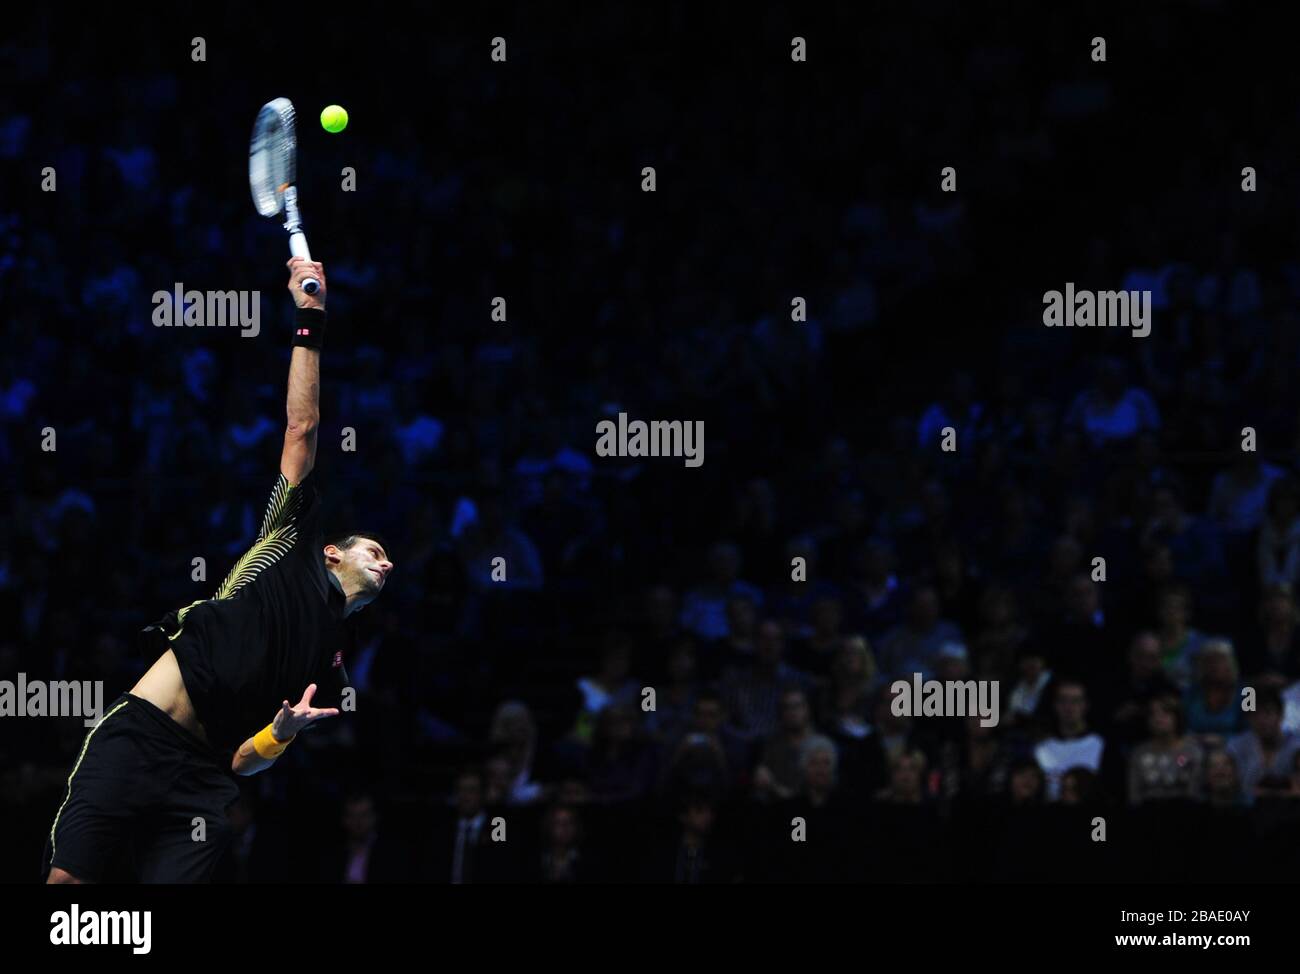 Serbiens Novak Djokovic im Einsatz gegen den tschechischen Tomas Berdych Stockfoto